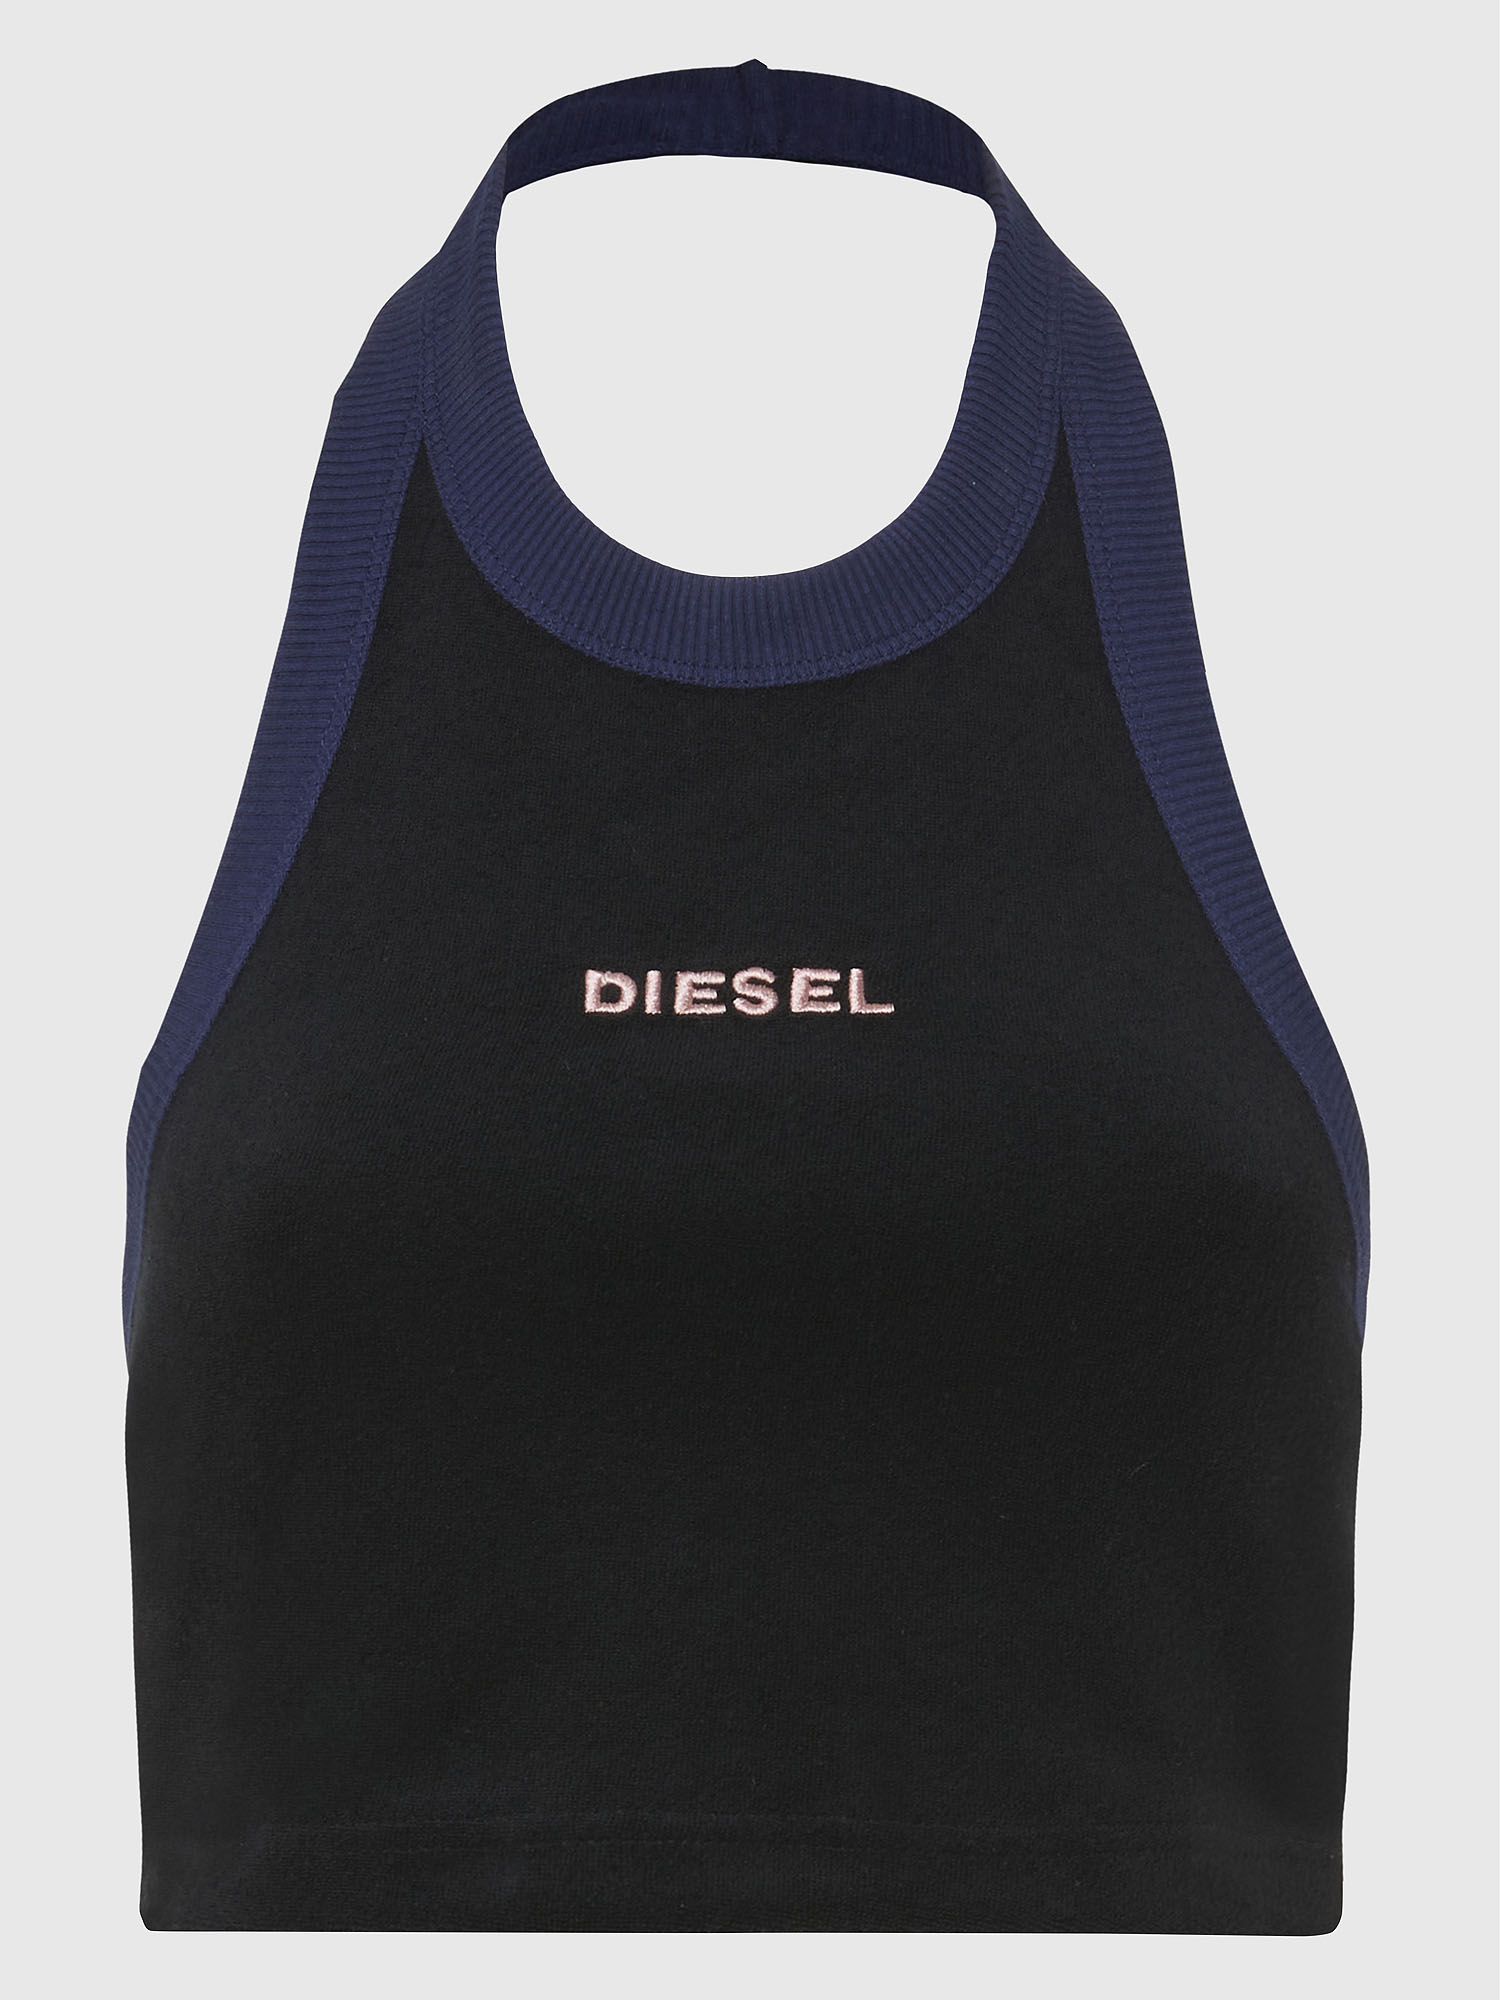 Diesel - UFTK-ASHLY, Black - Image 3